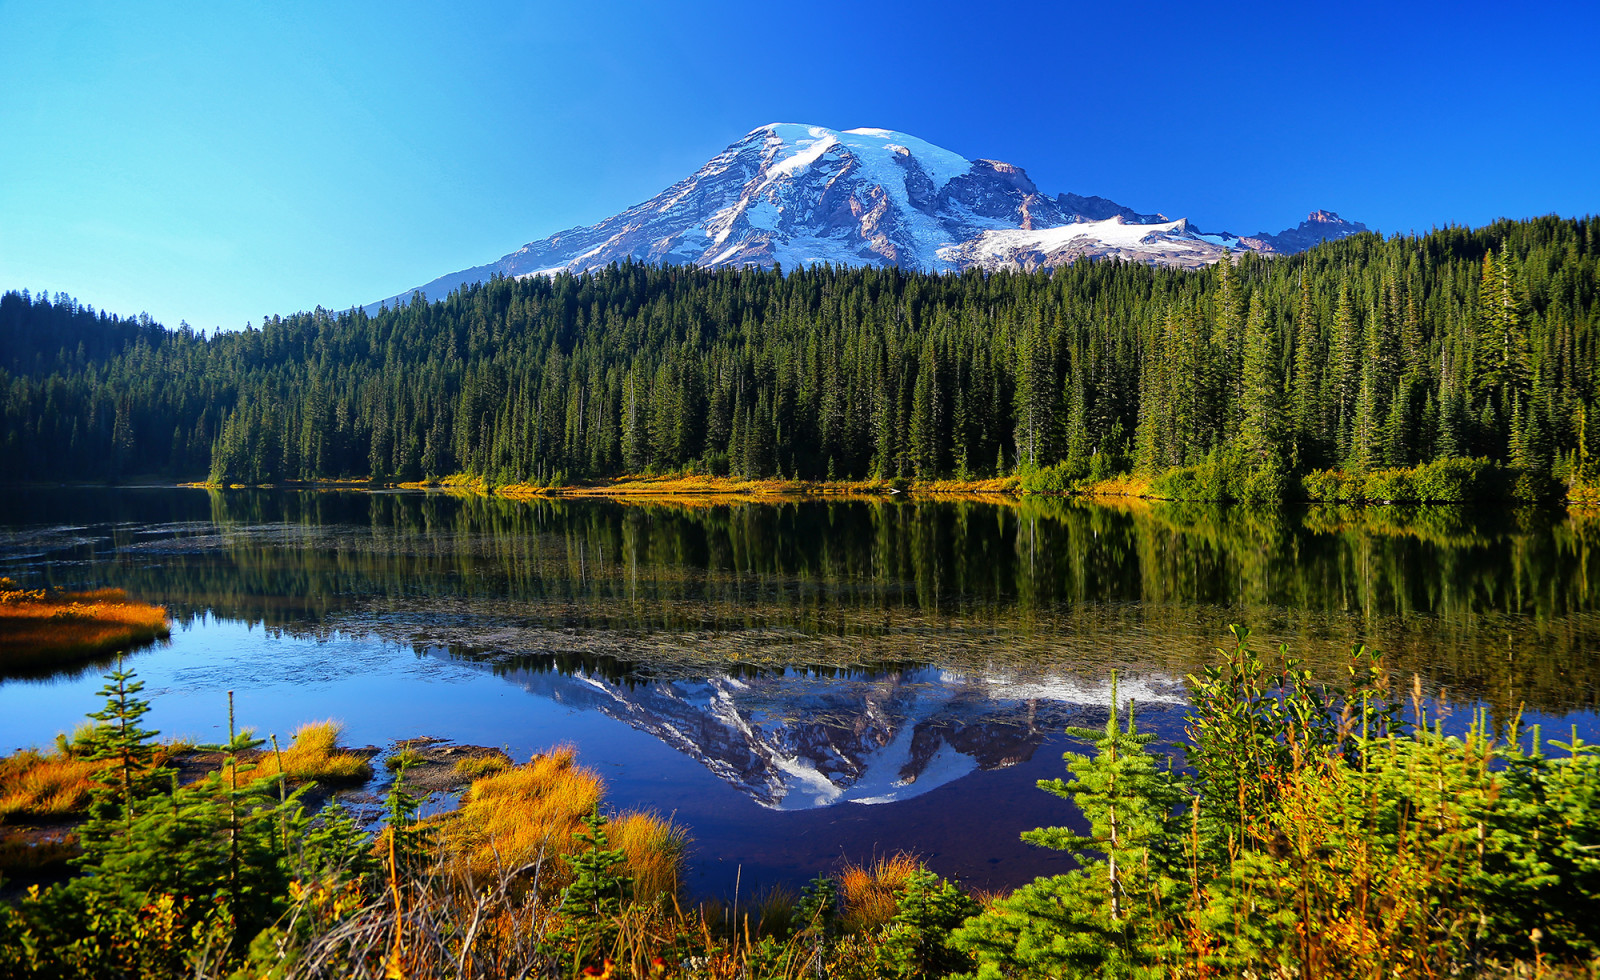 ฤดูใบไม้ร่วง, ป่า, ทะเลสาป, การสะท้อนกลับ, ต้นไม้, ภูเขา, น้ำ, อุทยานแห่งชาติ Mount Rainier